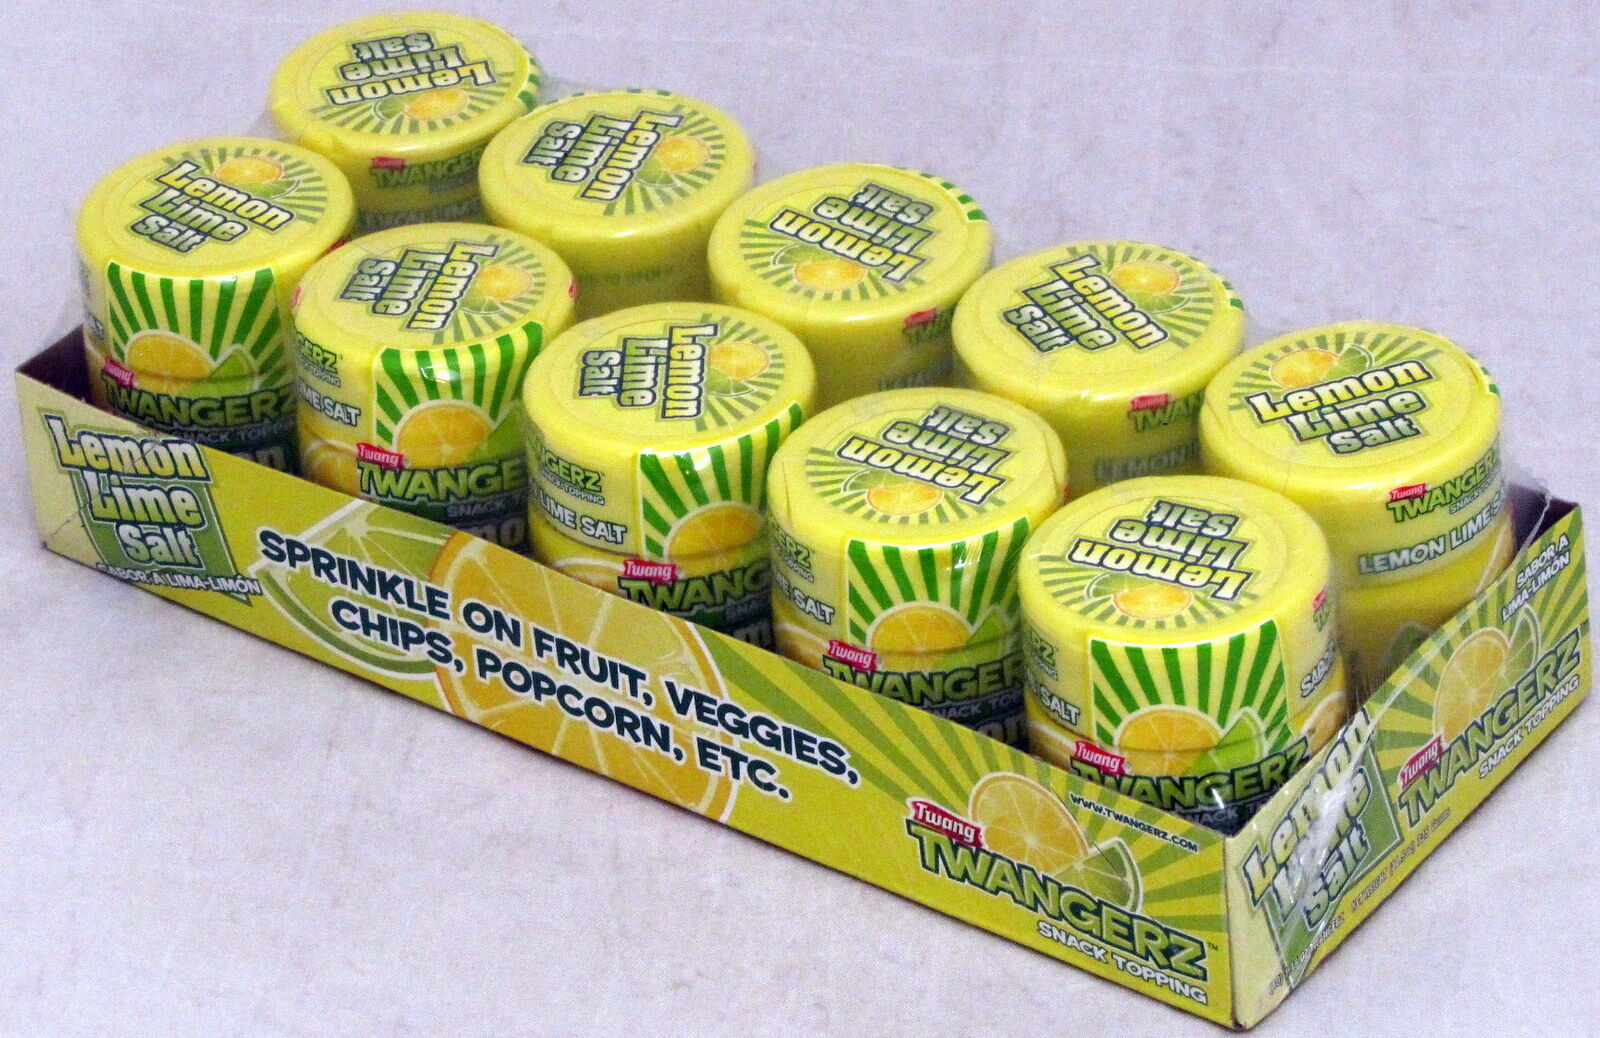 Twang Twangerz Salt Lemon Lime Bulk 10 Ct Snack Topping 1.15 Oz Shakers Popcorn